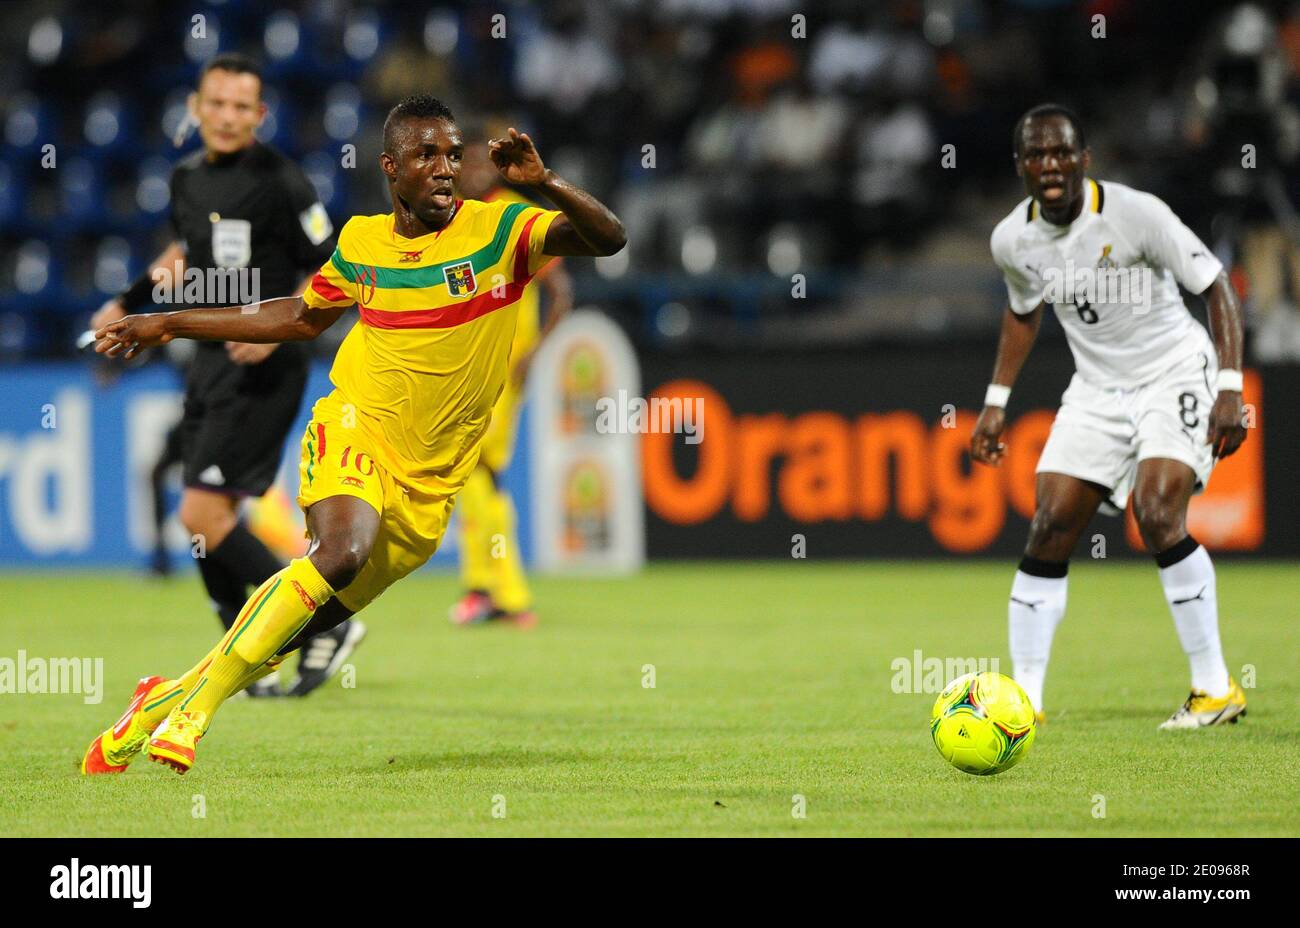 Mali's Modibo Maiga durante la partita di calcio della Coppa Africana delle Nazioni 2012, Ghana Vs Mali allo stadio Franceville in Gabon il 28 gennaio 2012. Il Ghana ha vinto 2-0. Foto di ABACAPRESS.COM Foto Stock